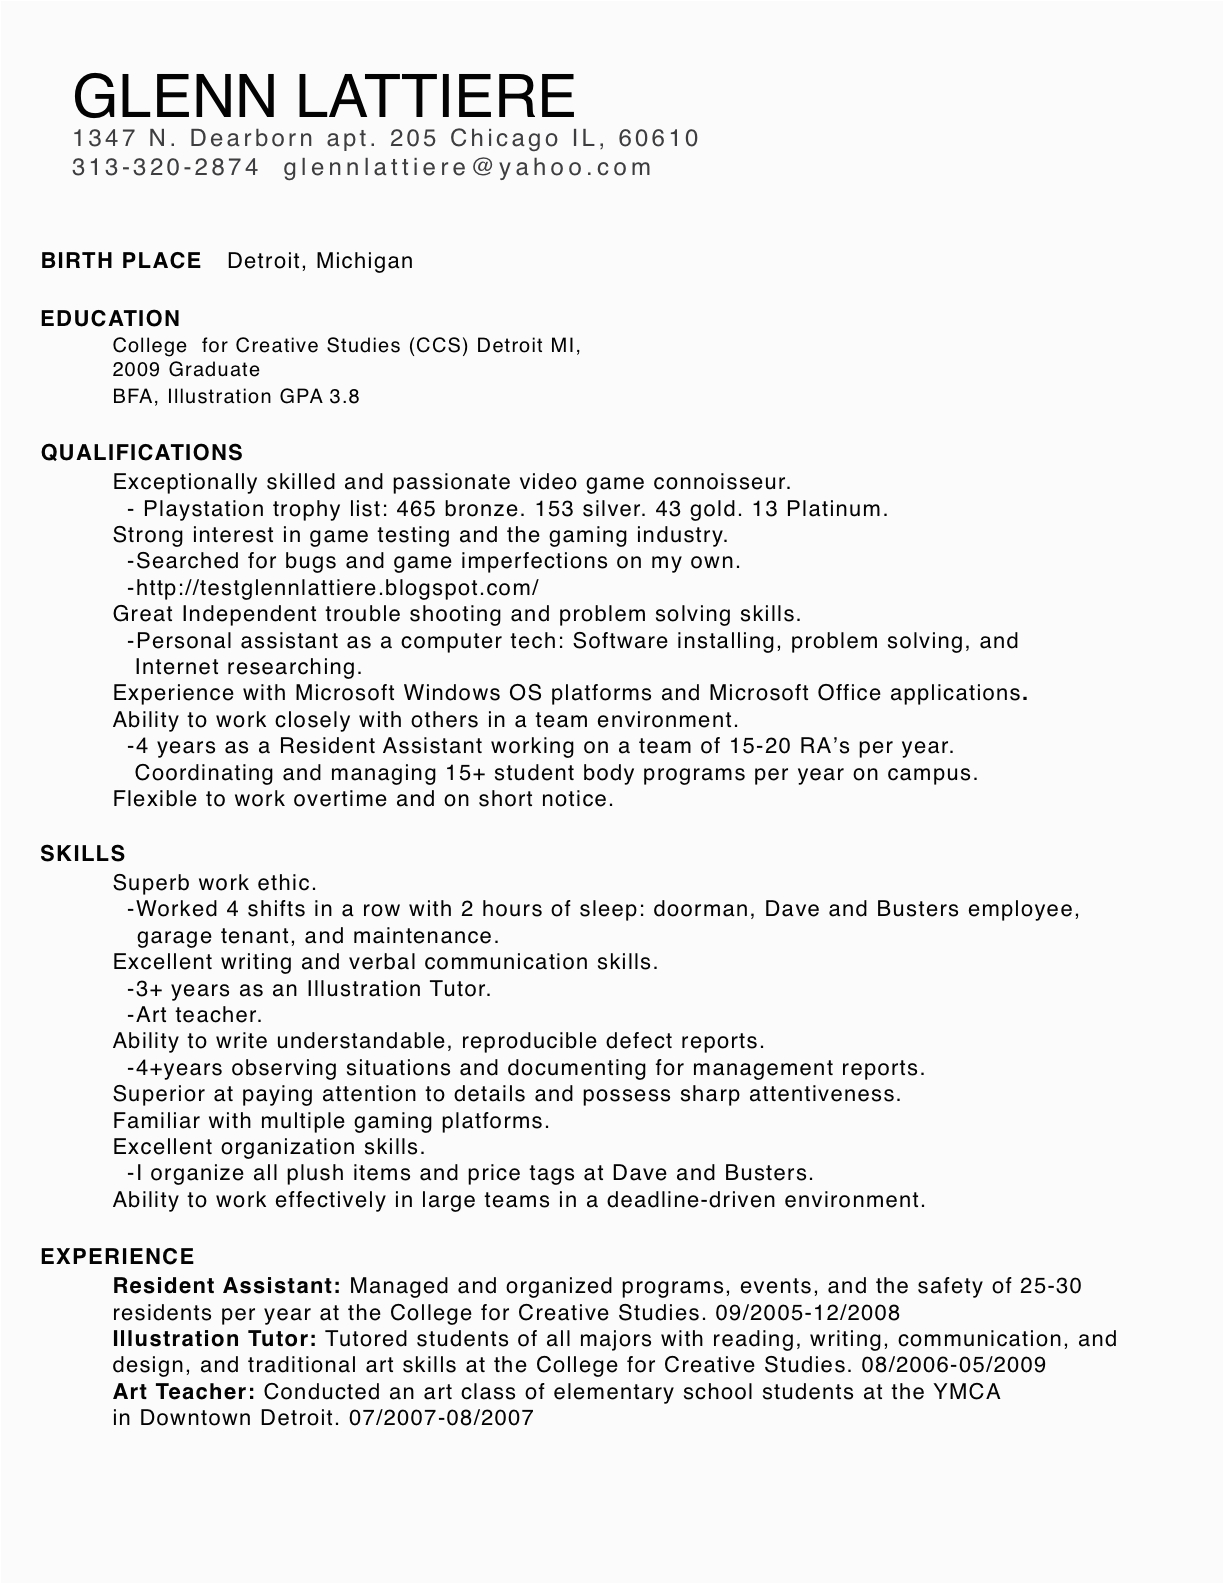 Sample Resume for Game Tester Fresher Test Glenn Lattiere Game Tester Resume